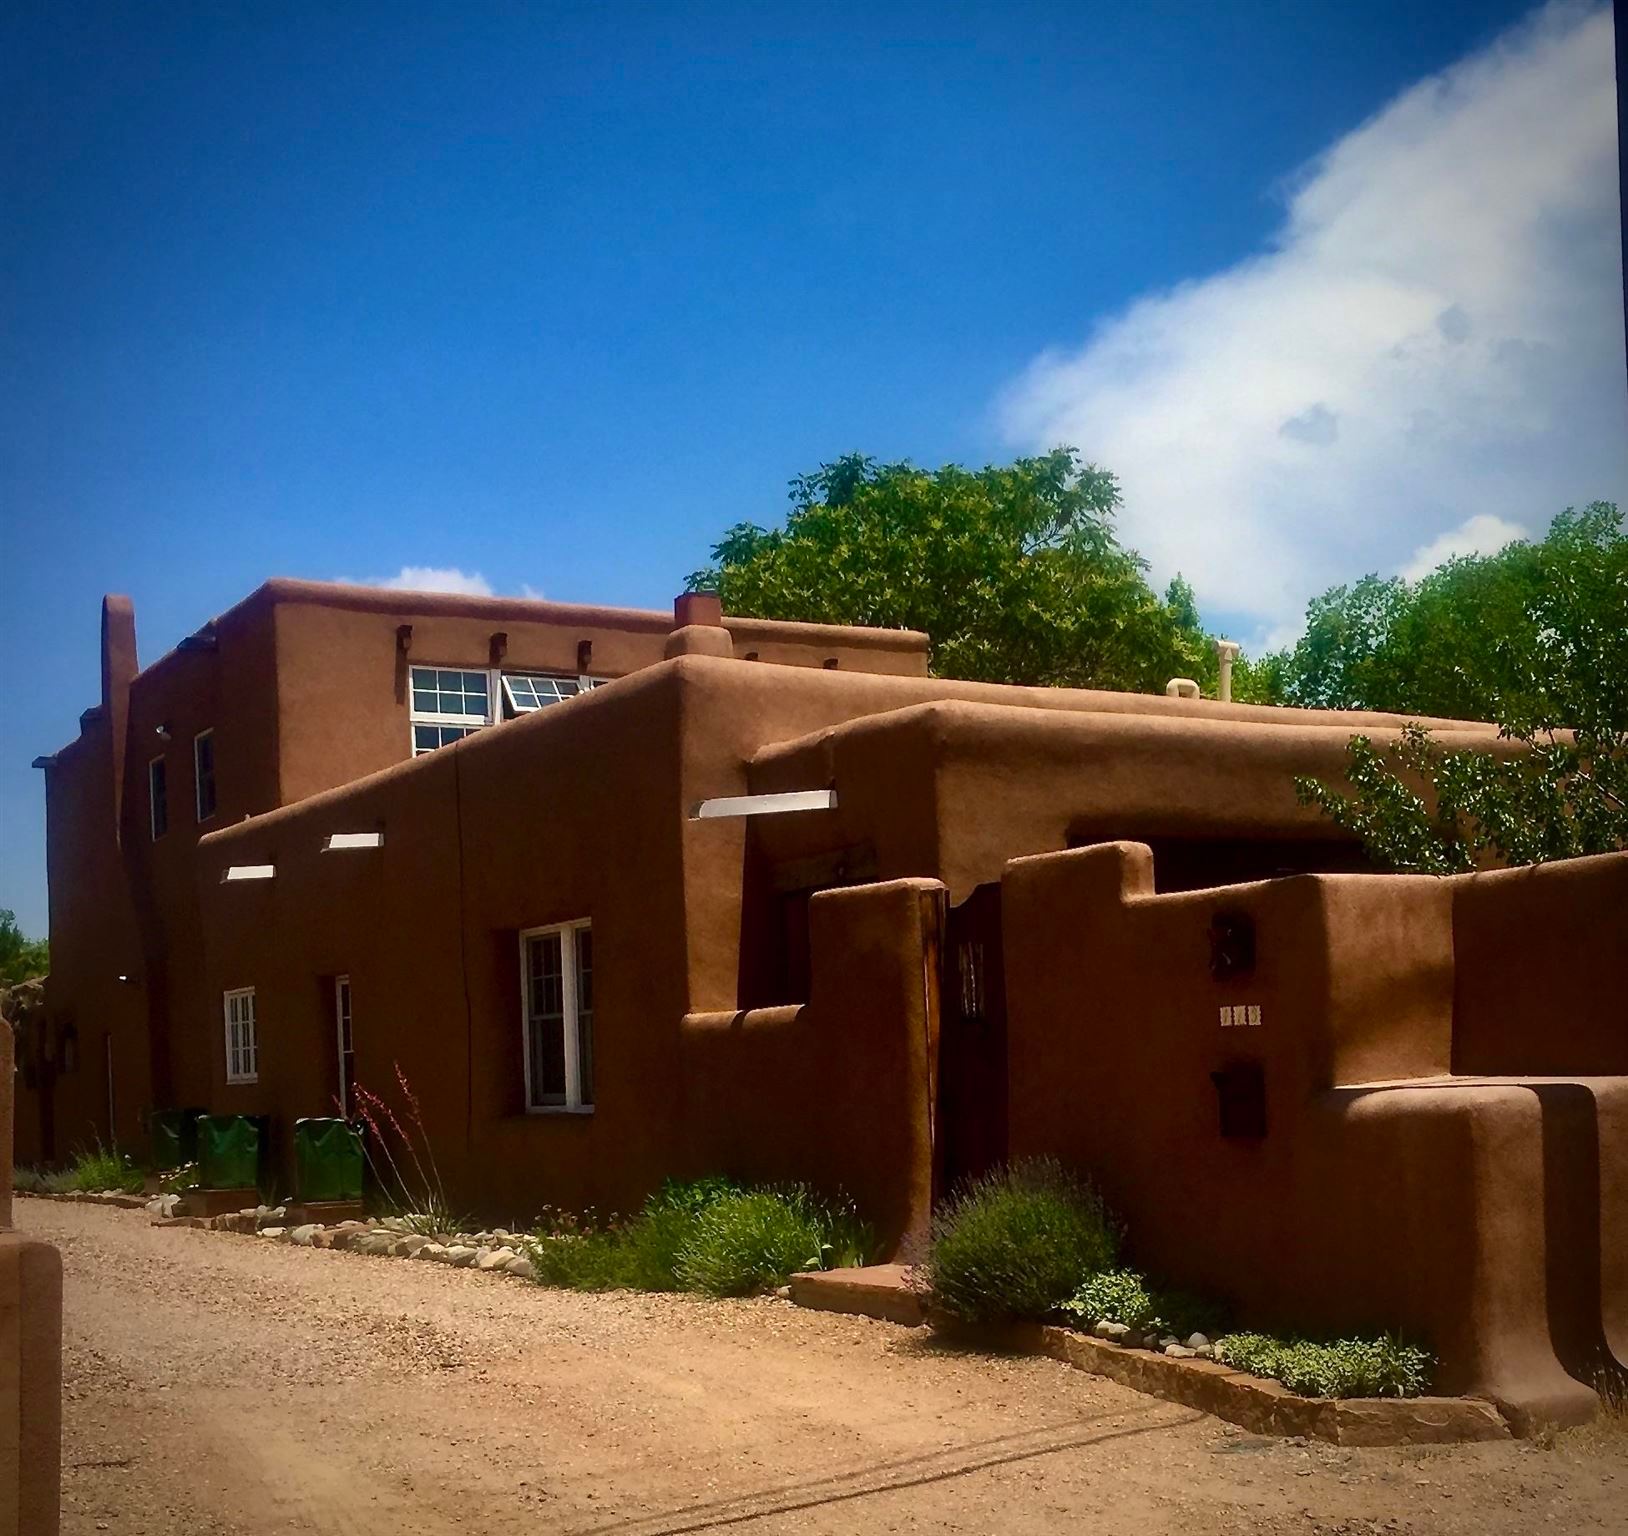 413 Arroyo Tenorio, Santa Fe, New Mexico 87505, 3 Bedrooms Bedrooms, ,3 BathroomsBathrooms,Residential,For Sale,413 Arroyo Tenorio,202103128